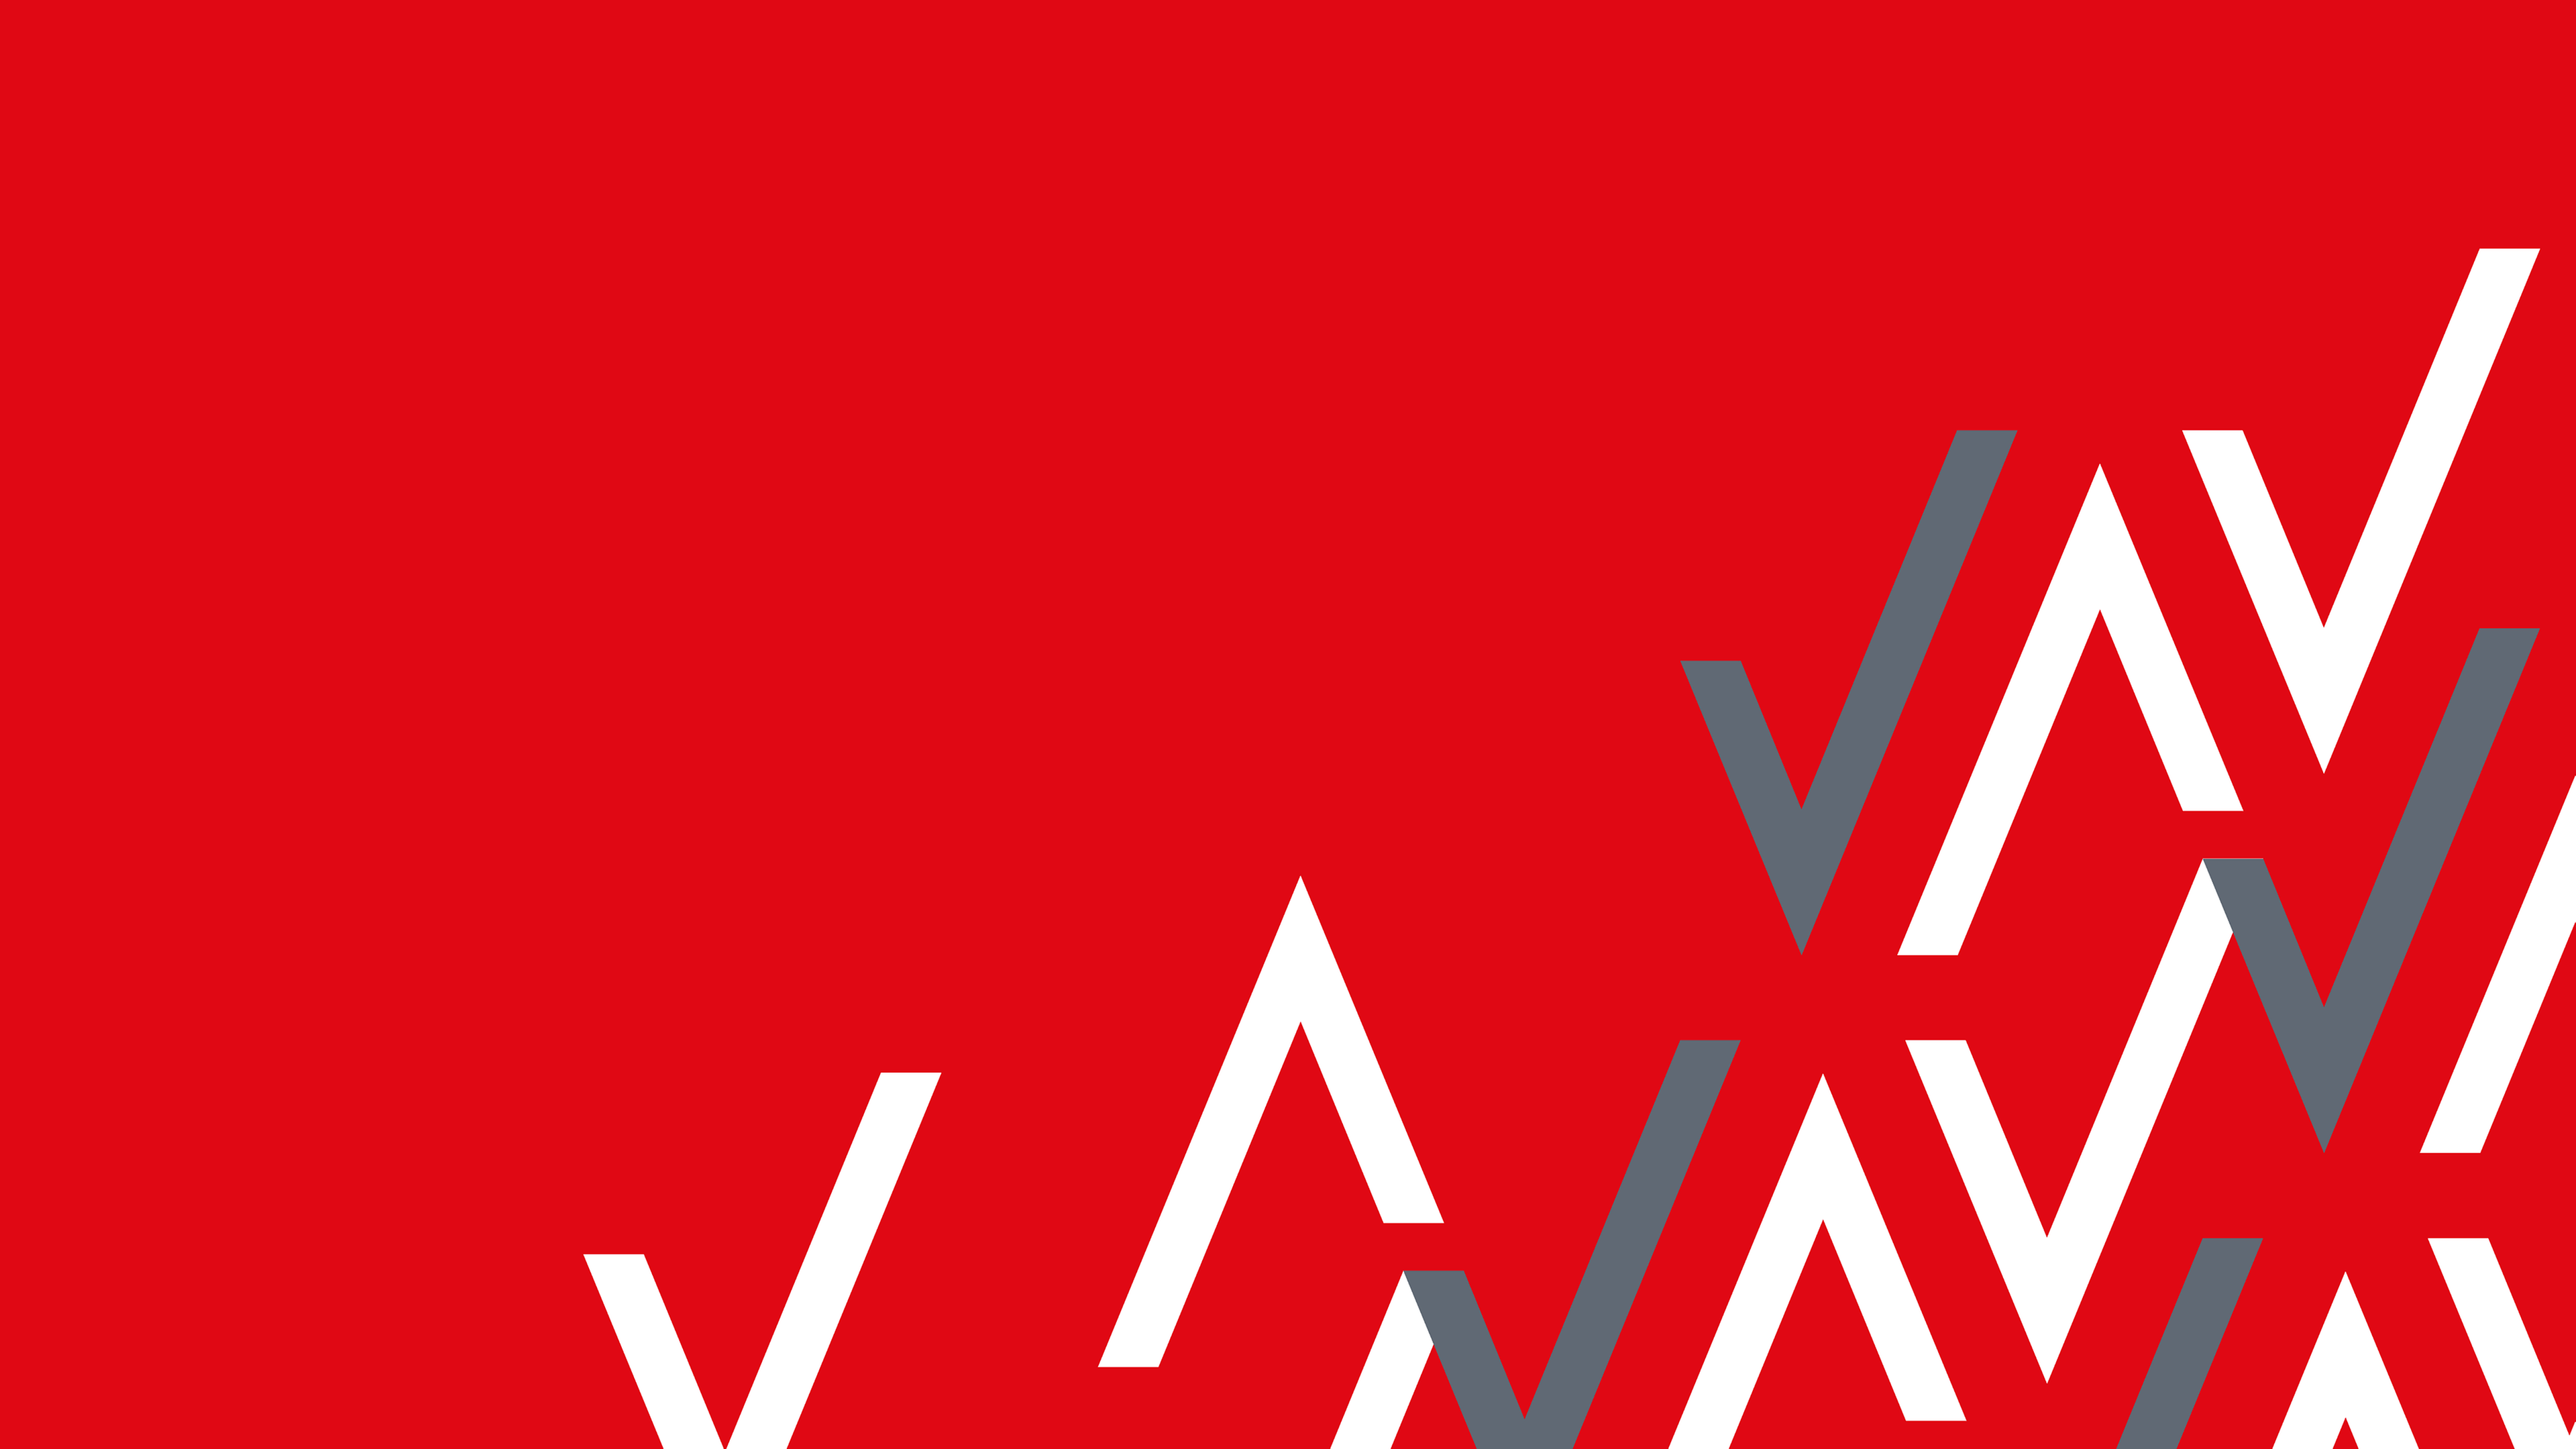 Henkel Tech Ventures large V-Shape pattern on red background.